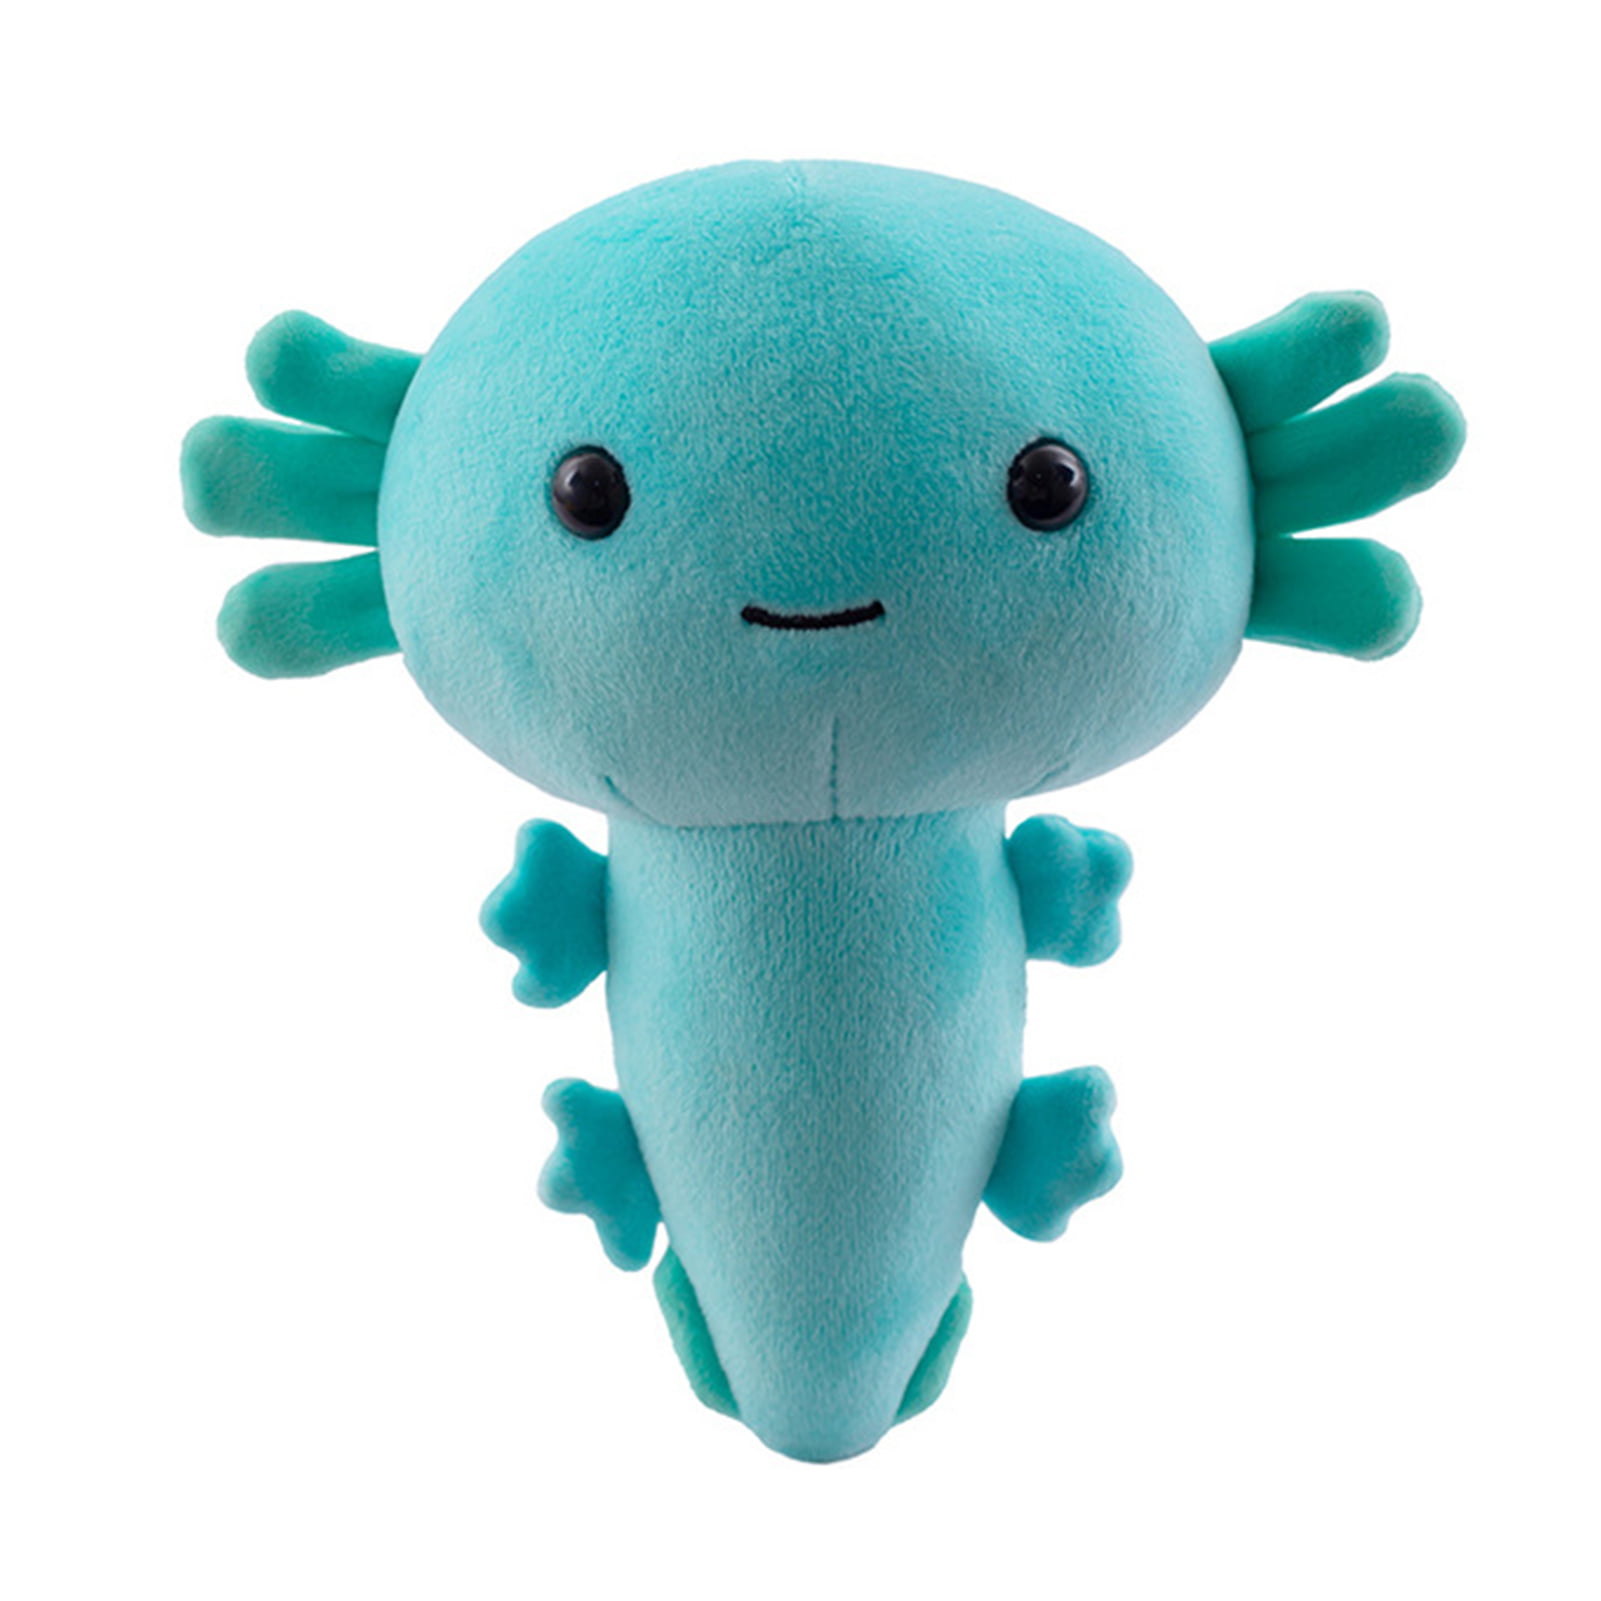 Salamander Plush Stuffed Toy 6" Small Kids Cute Animal Christmas Gifts 